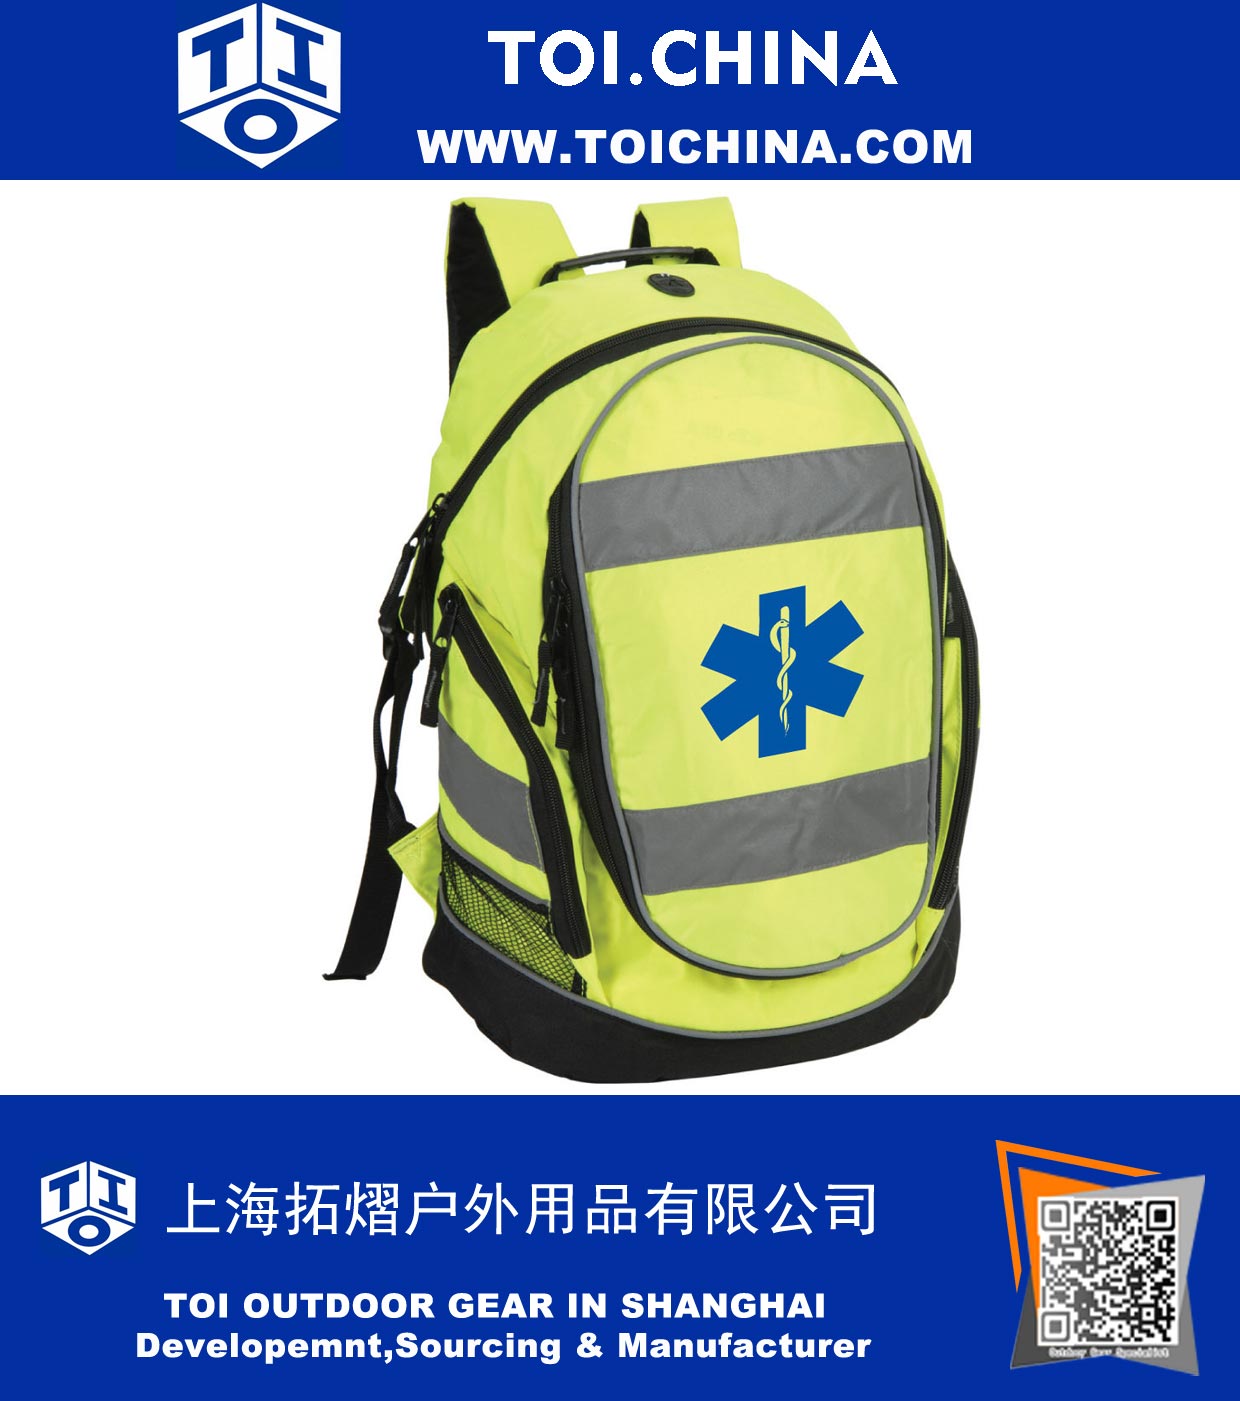 Oi-Vis Mochila Bag Trabalho - paramédico First Responder Ambulance Bag